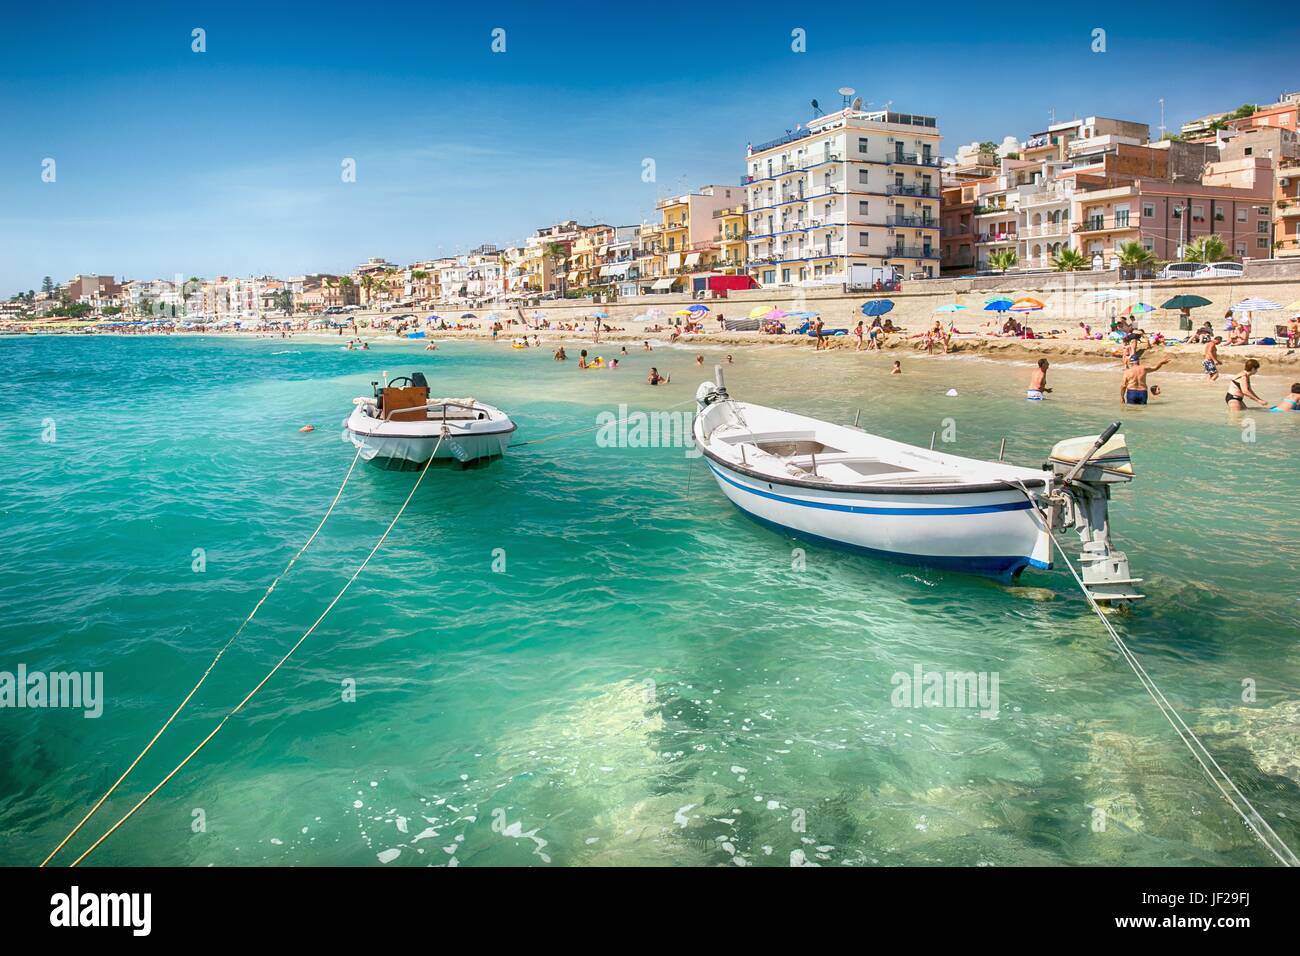 Beach of Giardini Naxos Stock Photo